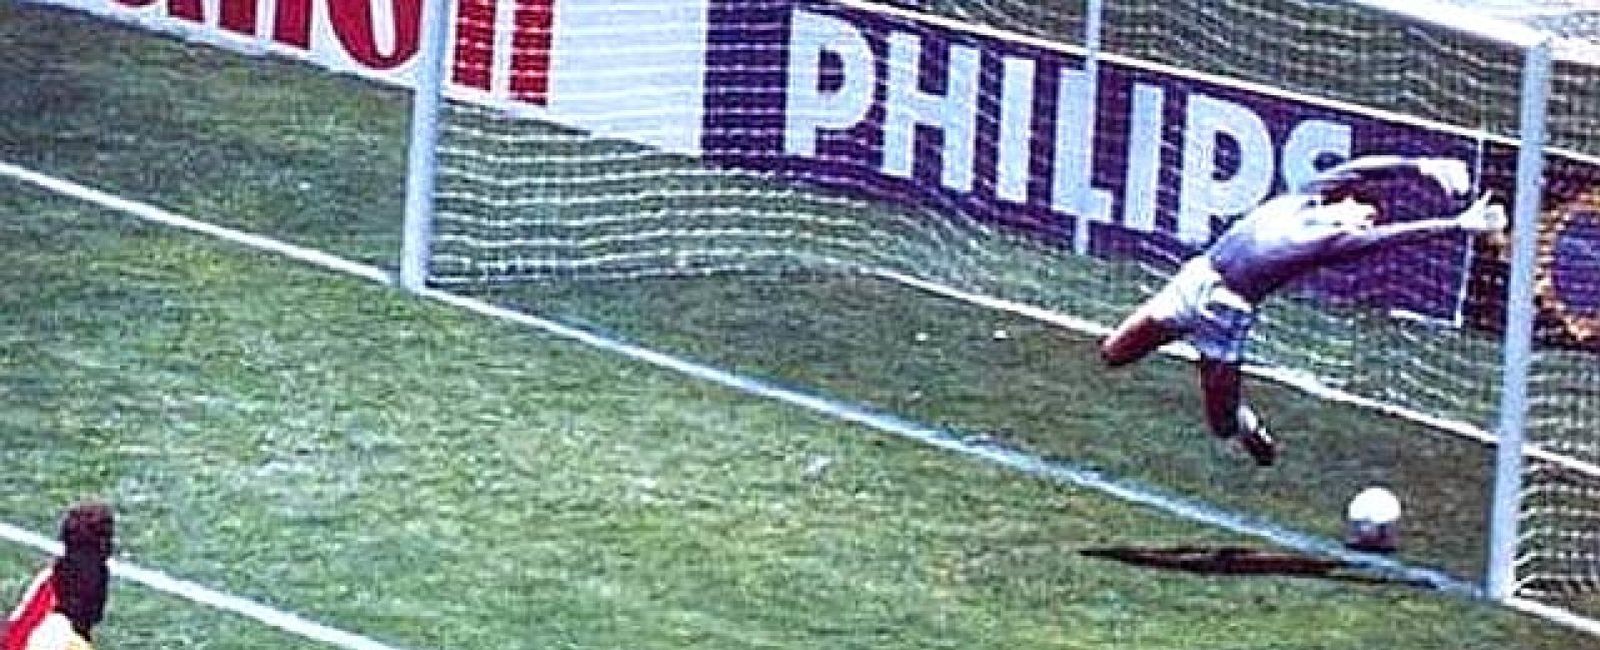 Foto: Fifa ultima la instalación de tecnología en la línea de gol